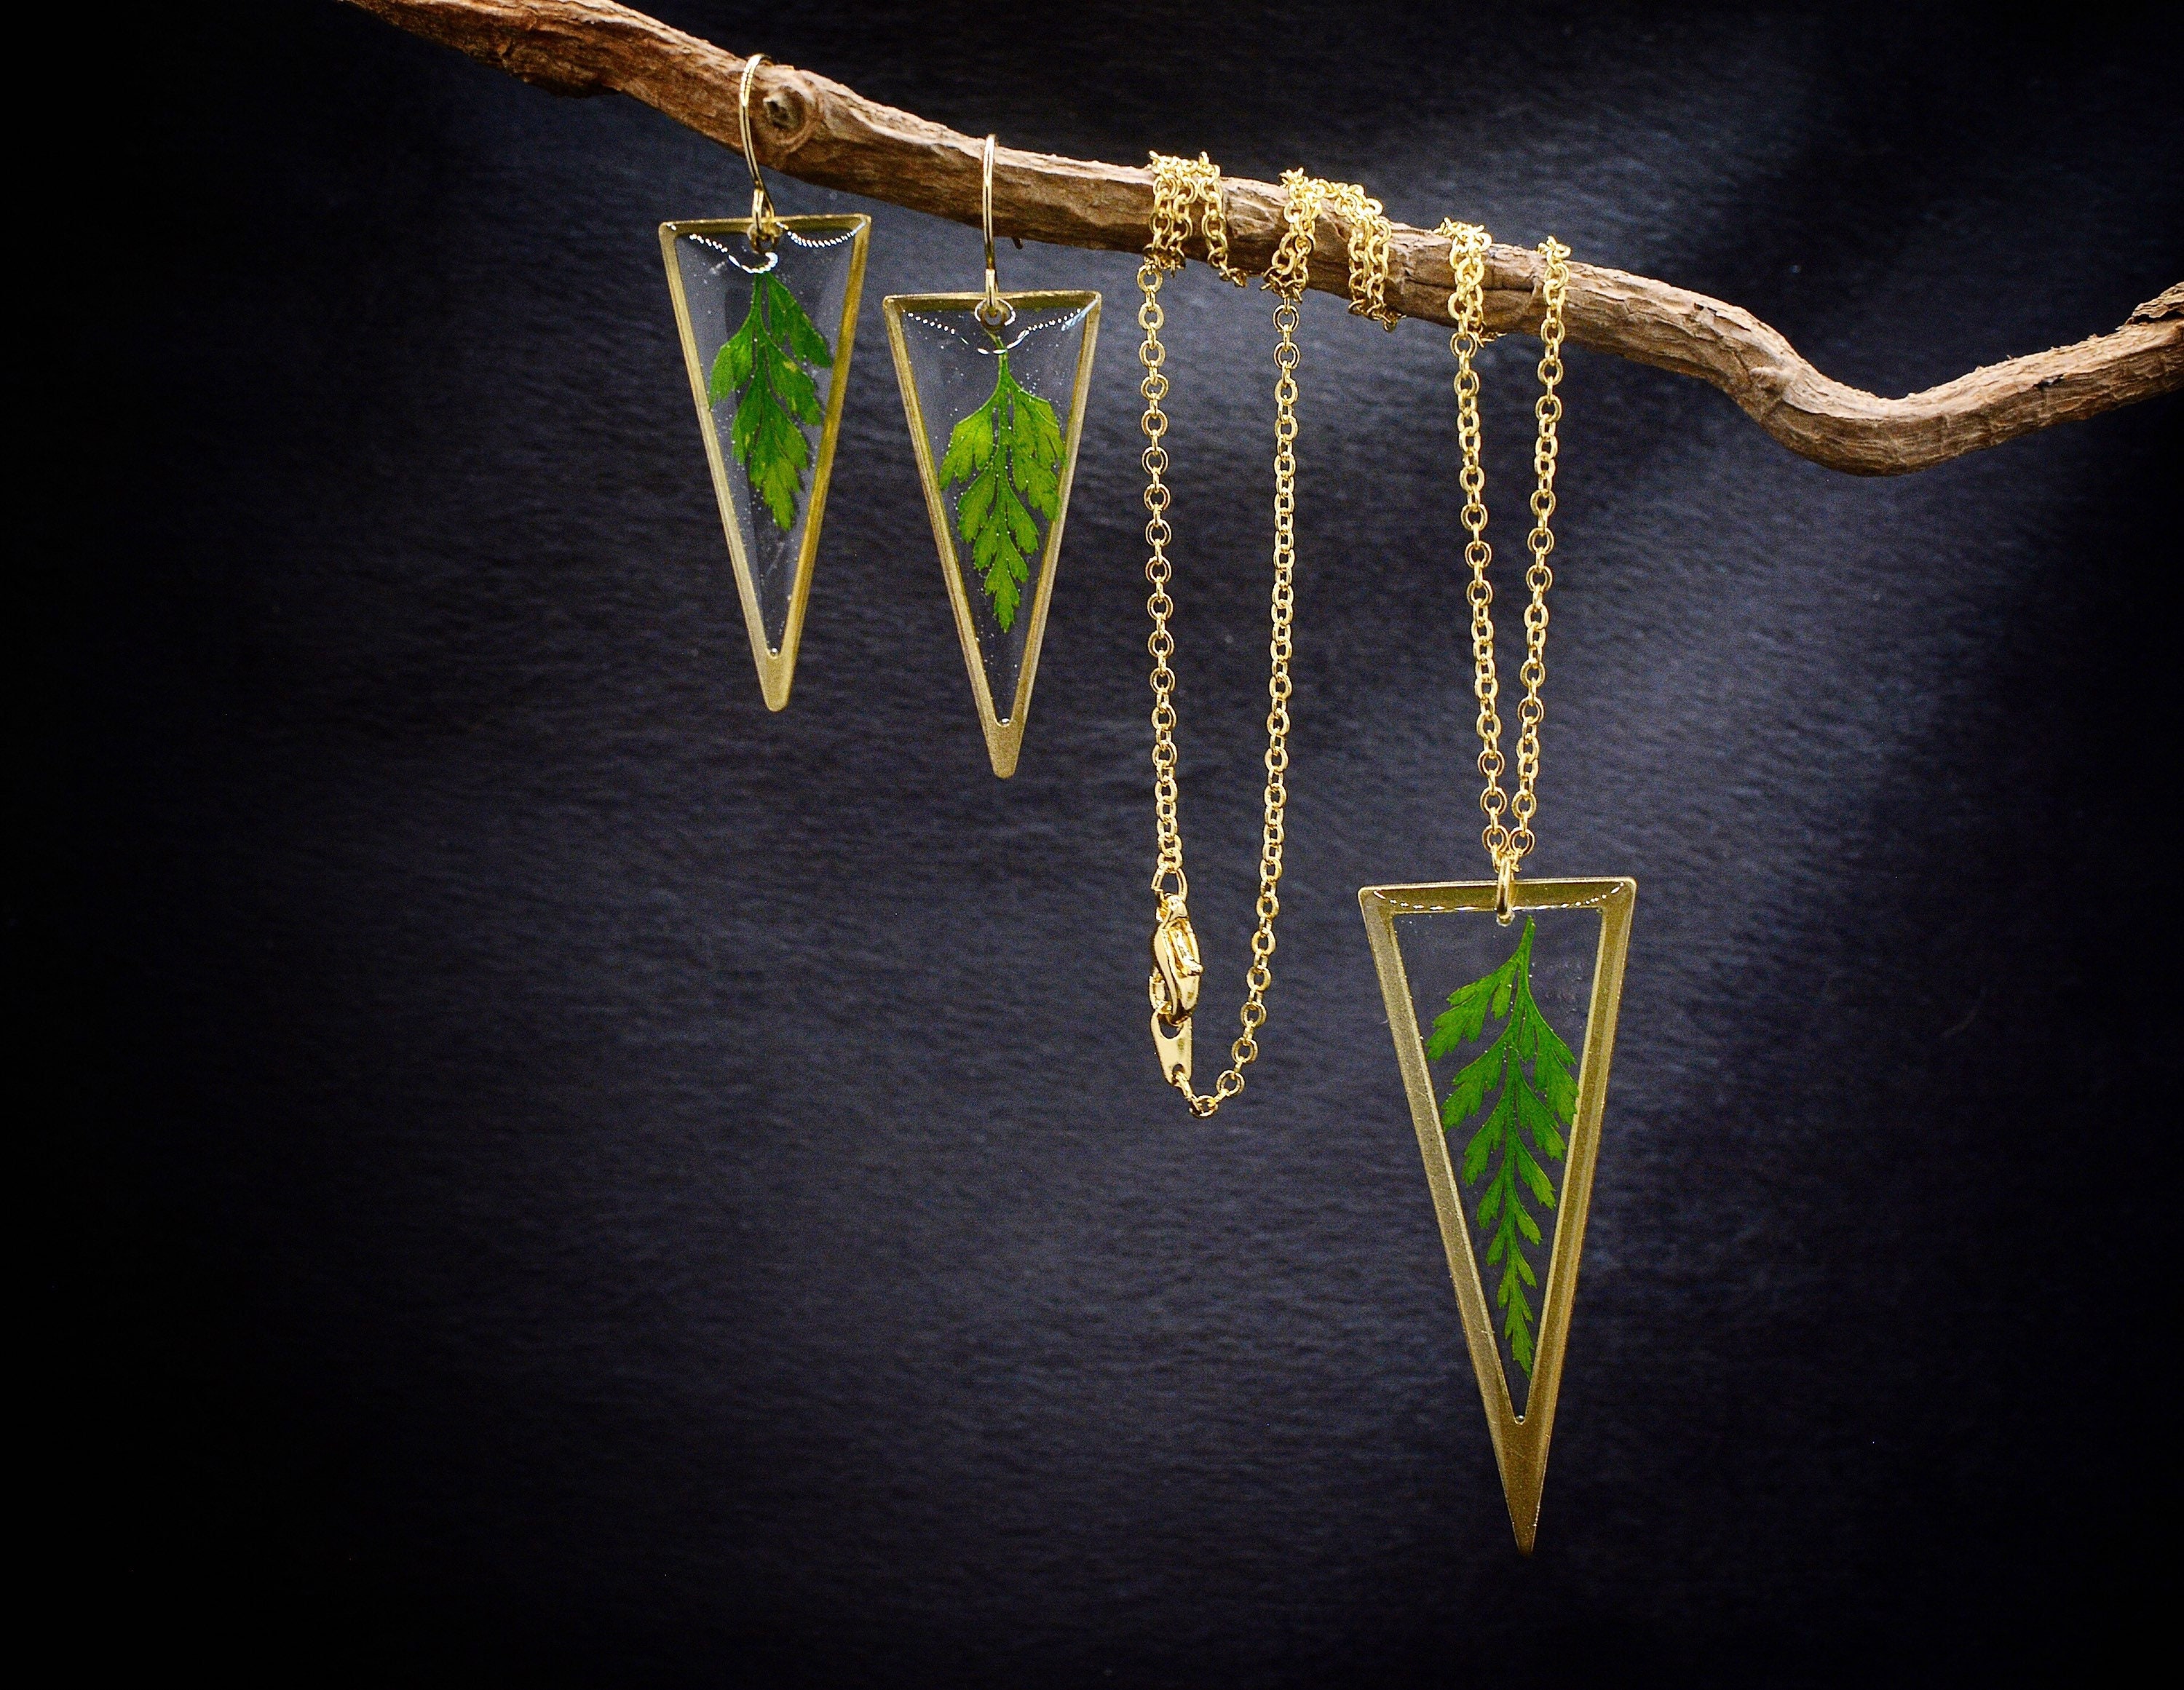 Real Fern Jewelry Set/Fern Earrings/Fern Necklace/ Botanical Boho Jewelry/Mothers Day Gift Idea